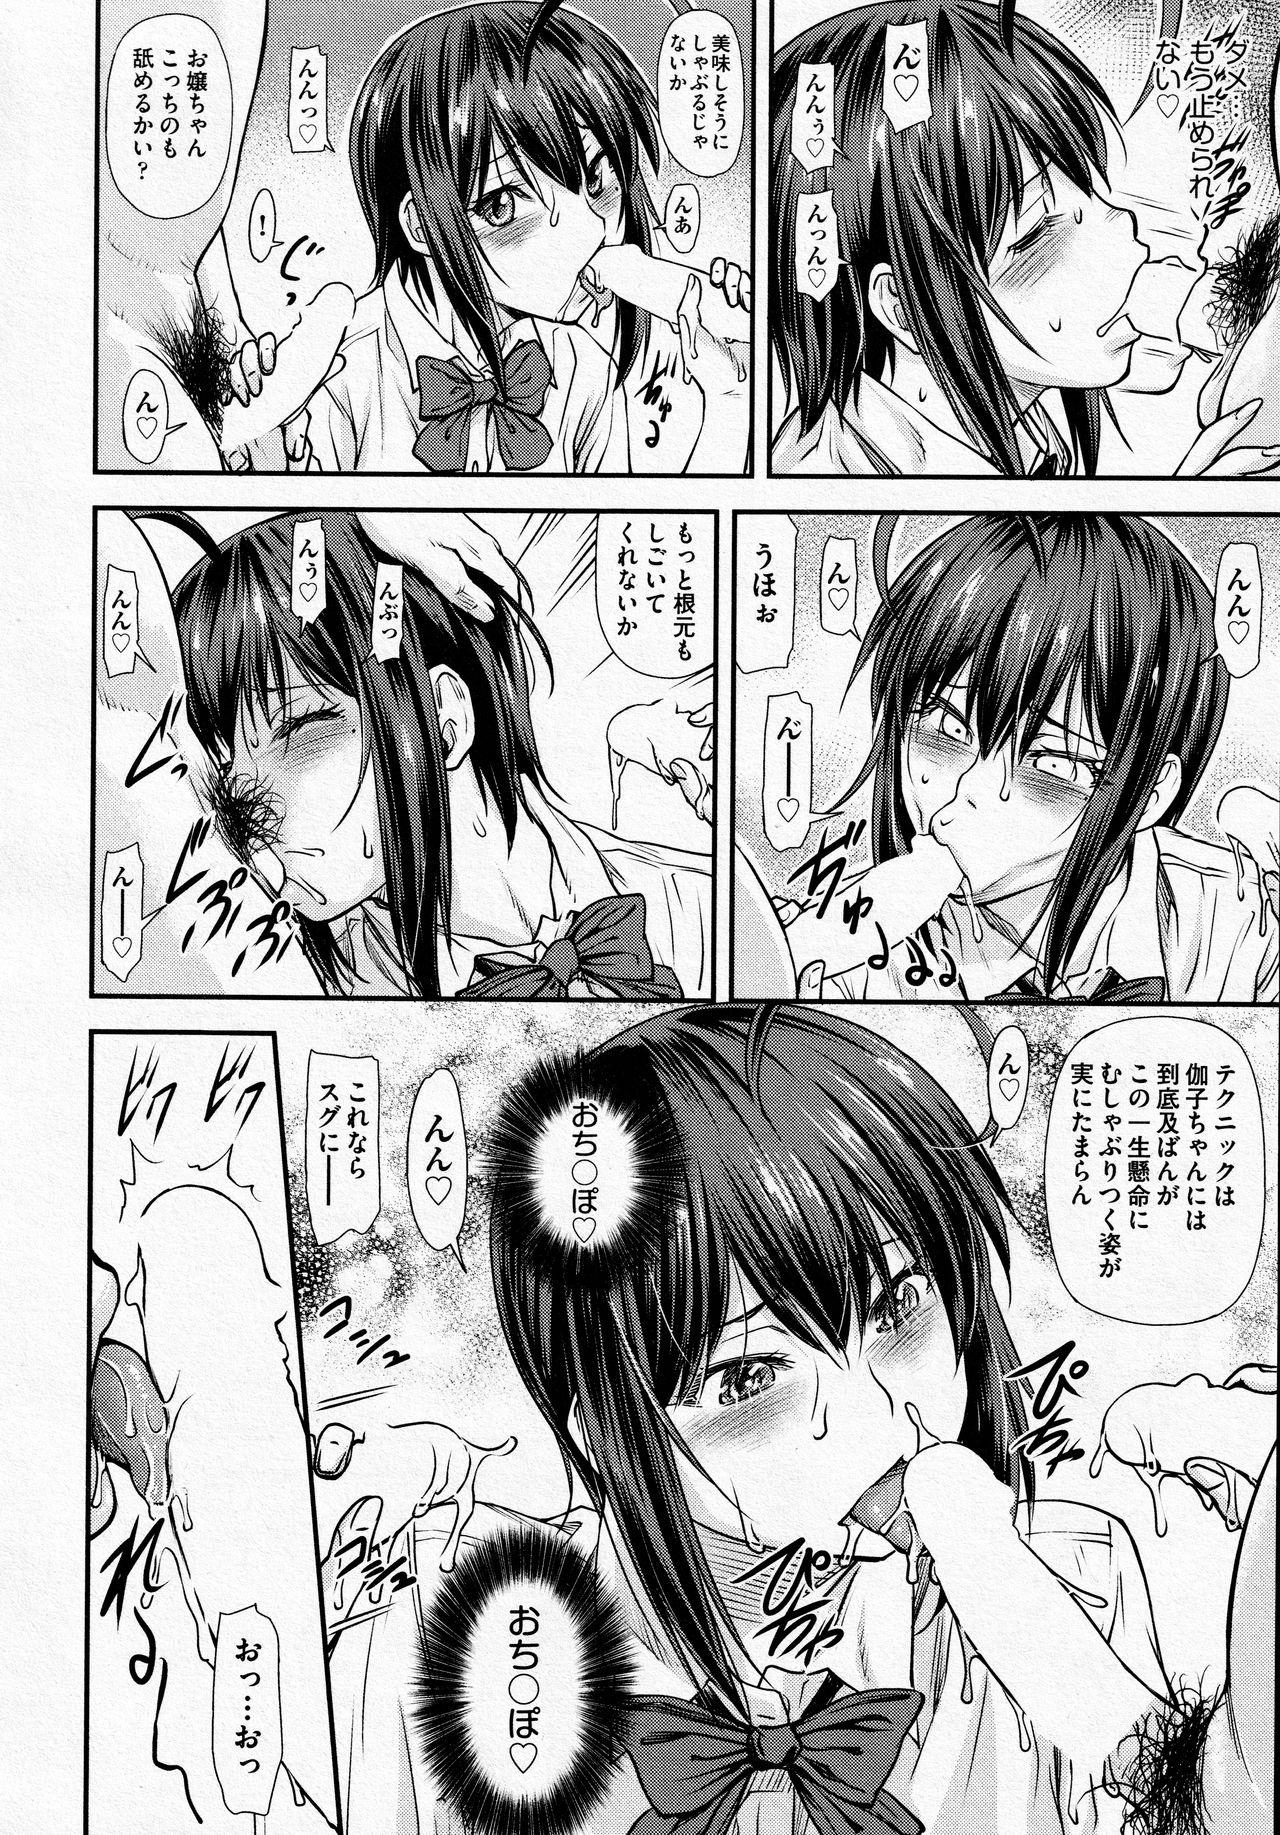 Analfucking Kaname Date #14 Strange - Page 10